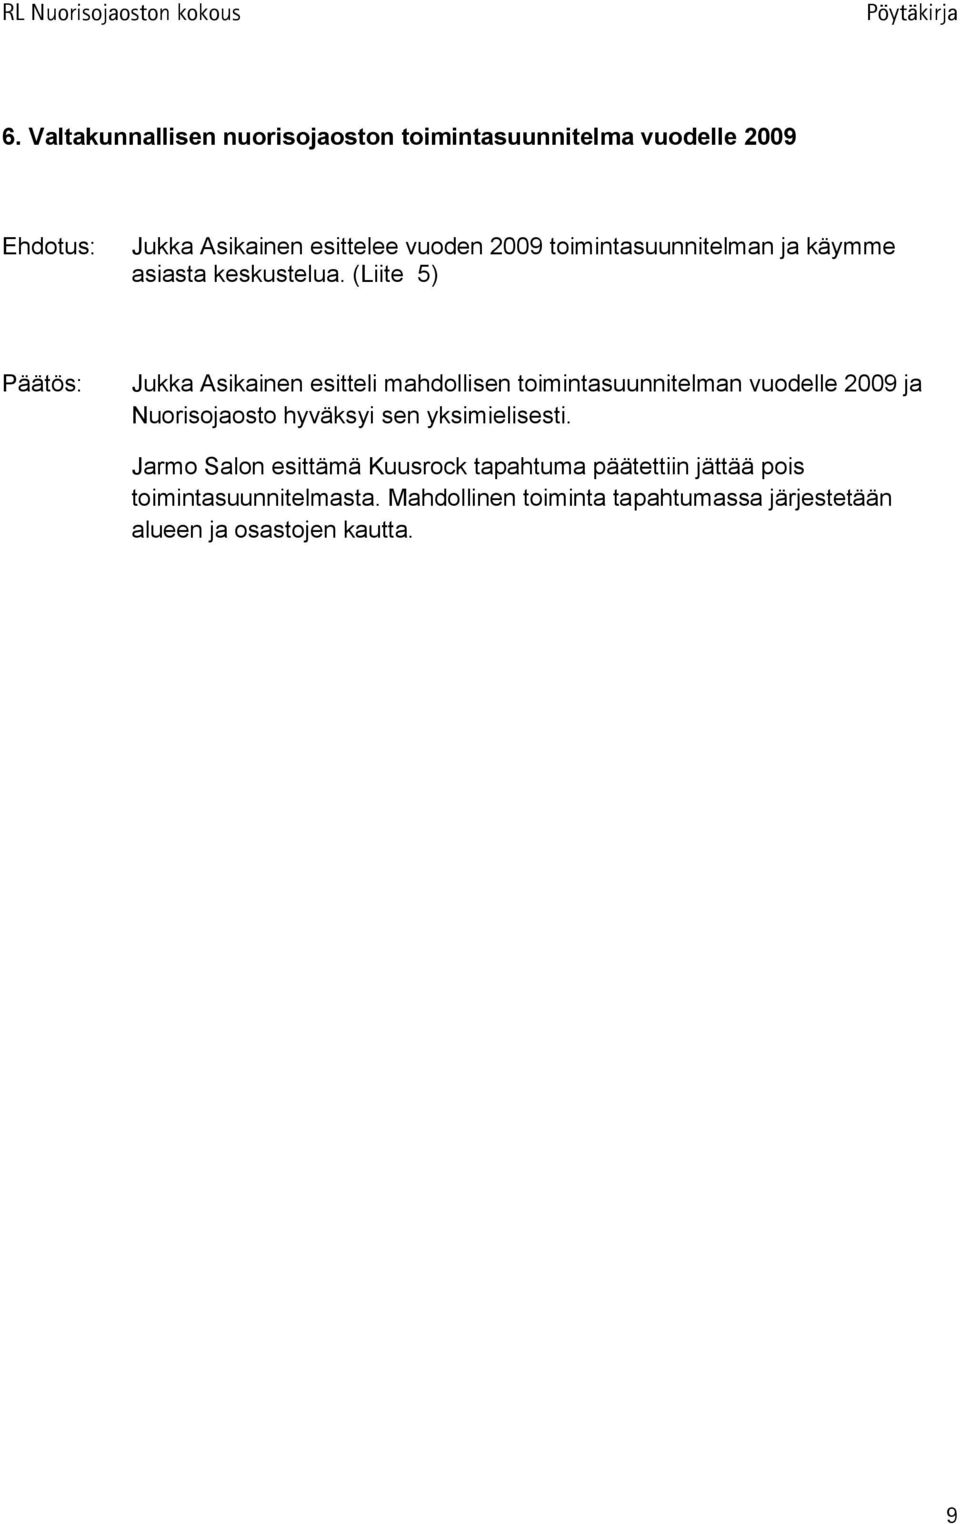 (Liite 5) Jukka Asikainen esitteli mahdollisen toimintasuunnitelman vuodelle 2009 ja Nuorisojaosto hyväksyi sen